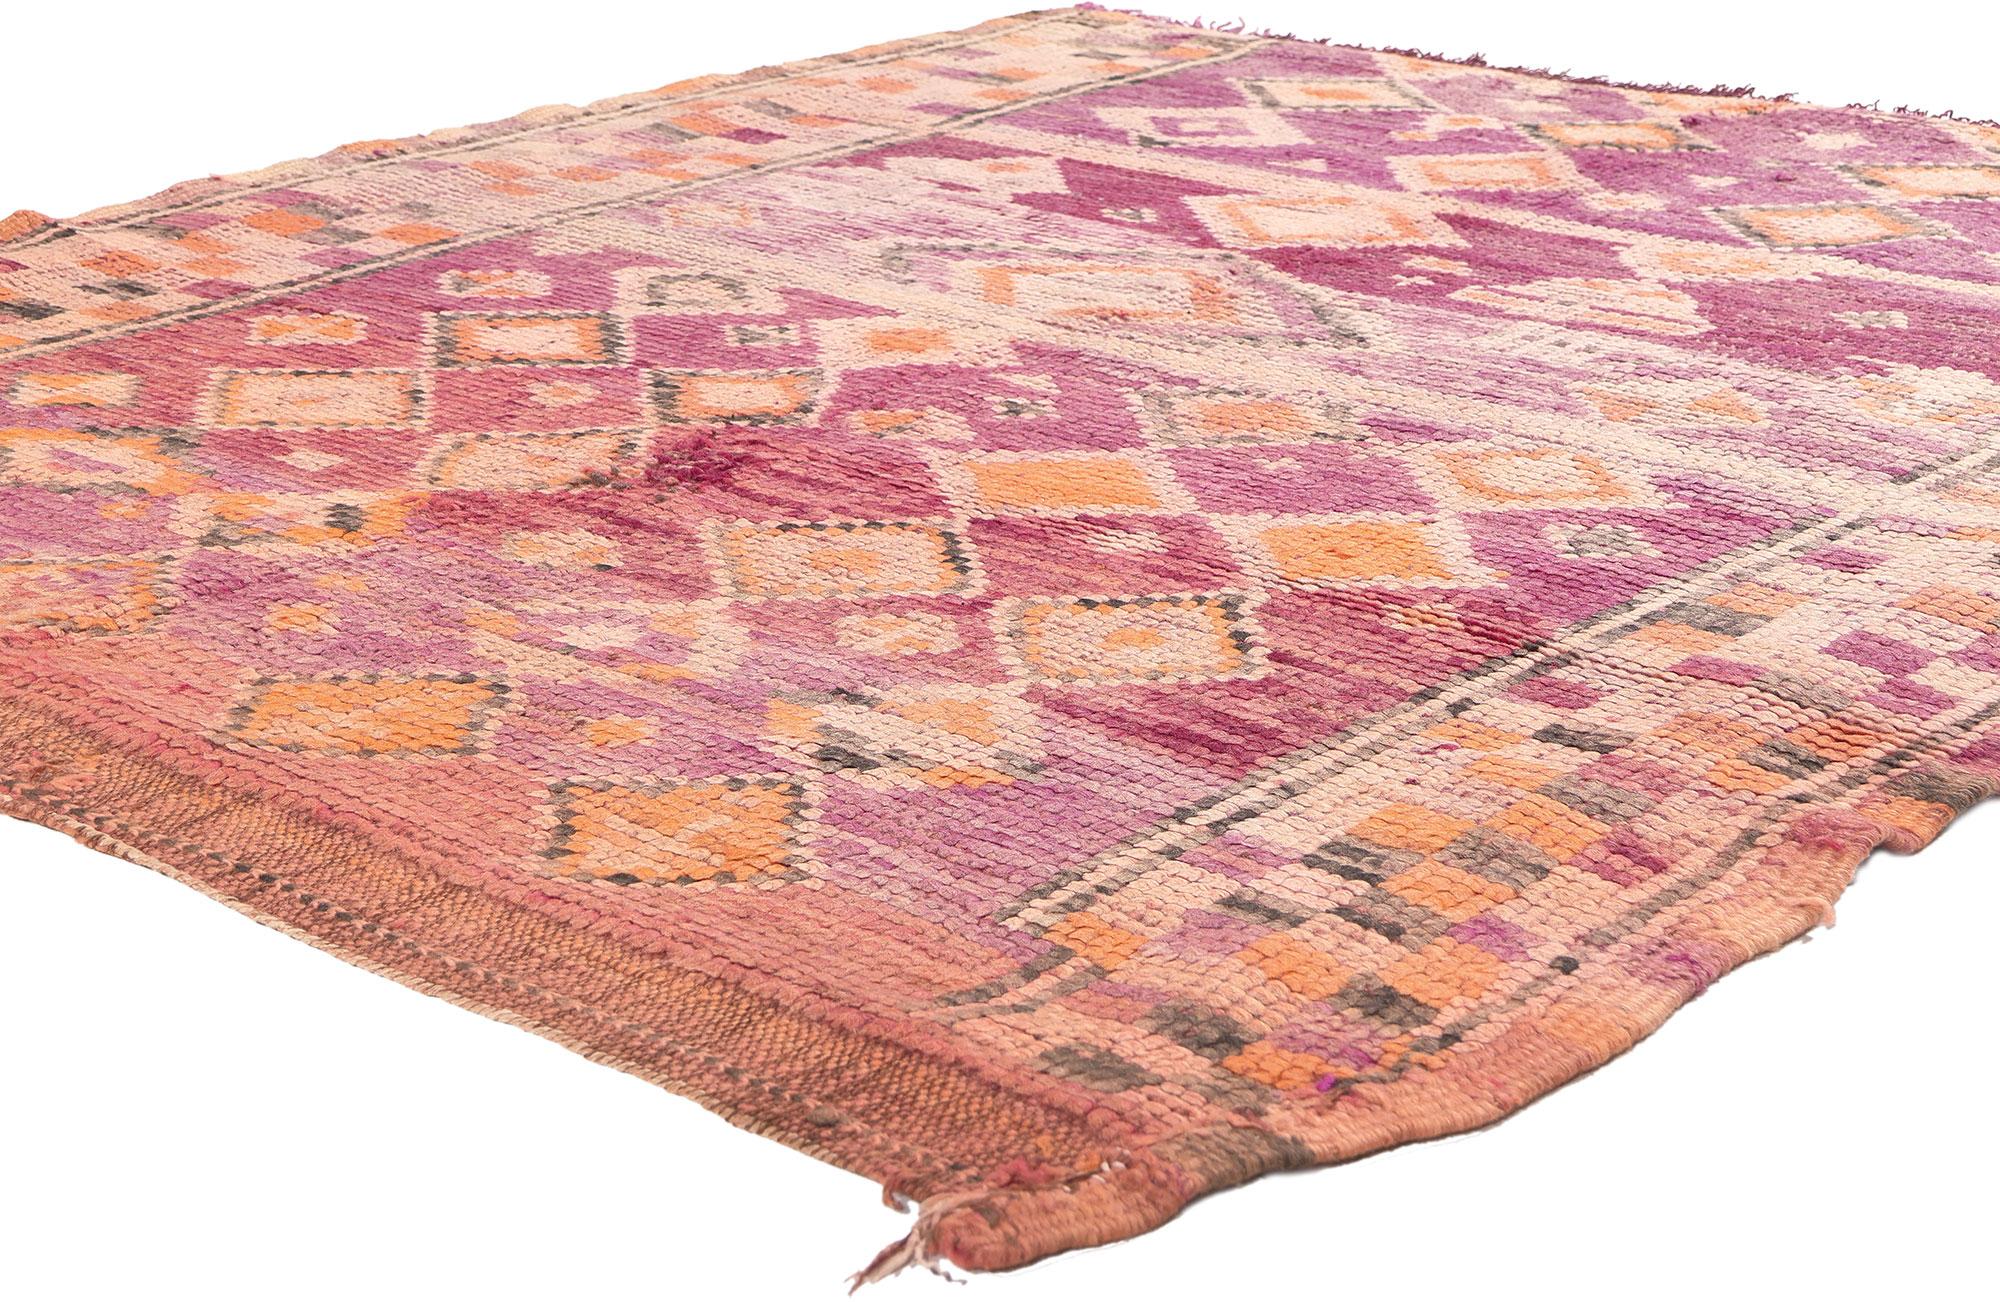 20479 Tapis marocain Vintage Boujad, 05'05 x 05'10. 
Dans ce tapis marocain Boujad vintage en laine nouée à la main, l'essence d'un nomade douillet converge avec le rythme vibrant d'une rhapsodie bohème. Le design intrinsèque du diamant et la